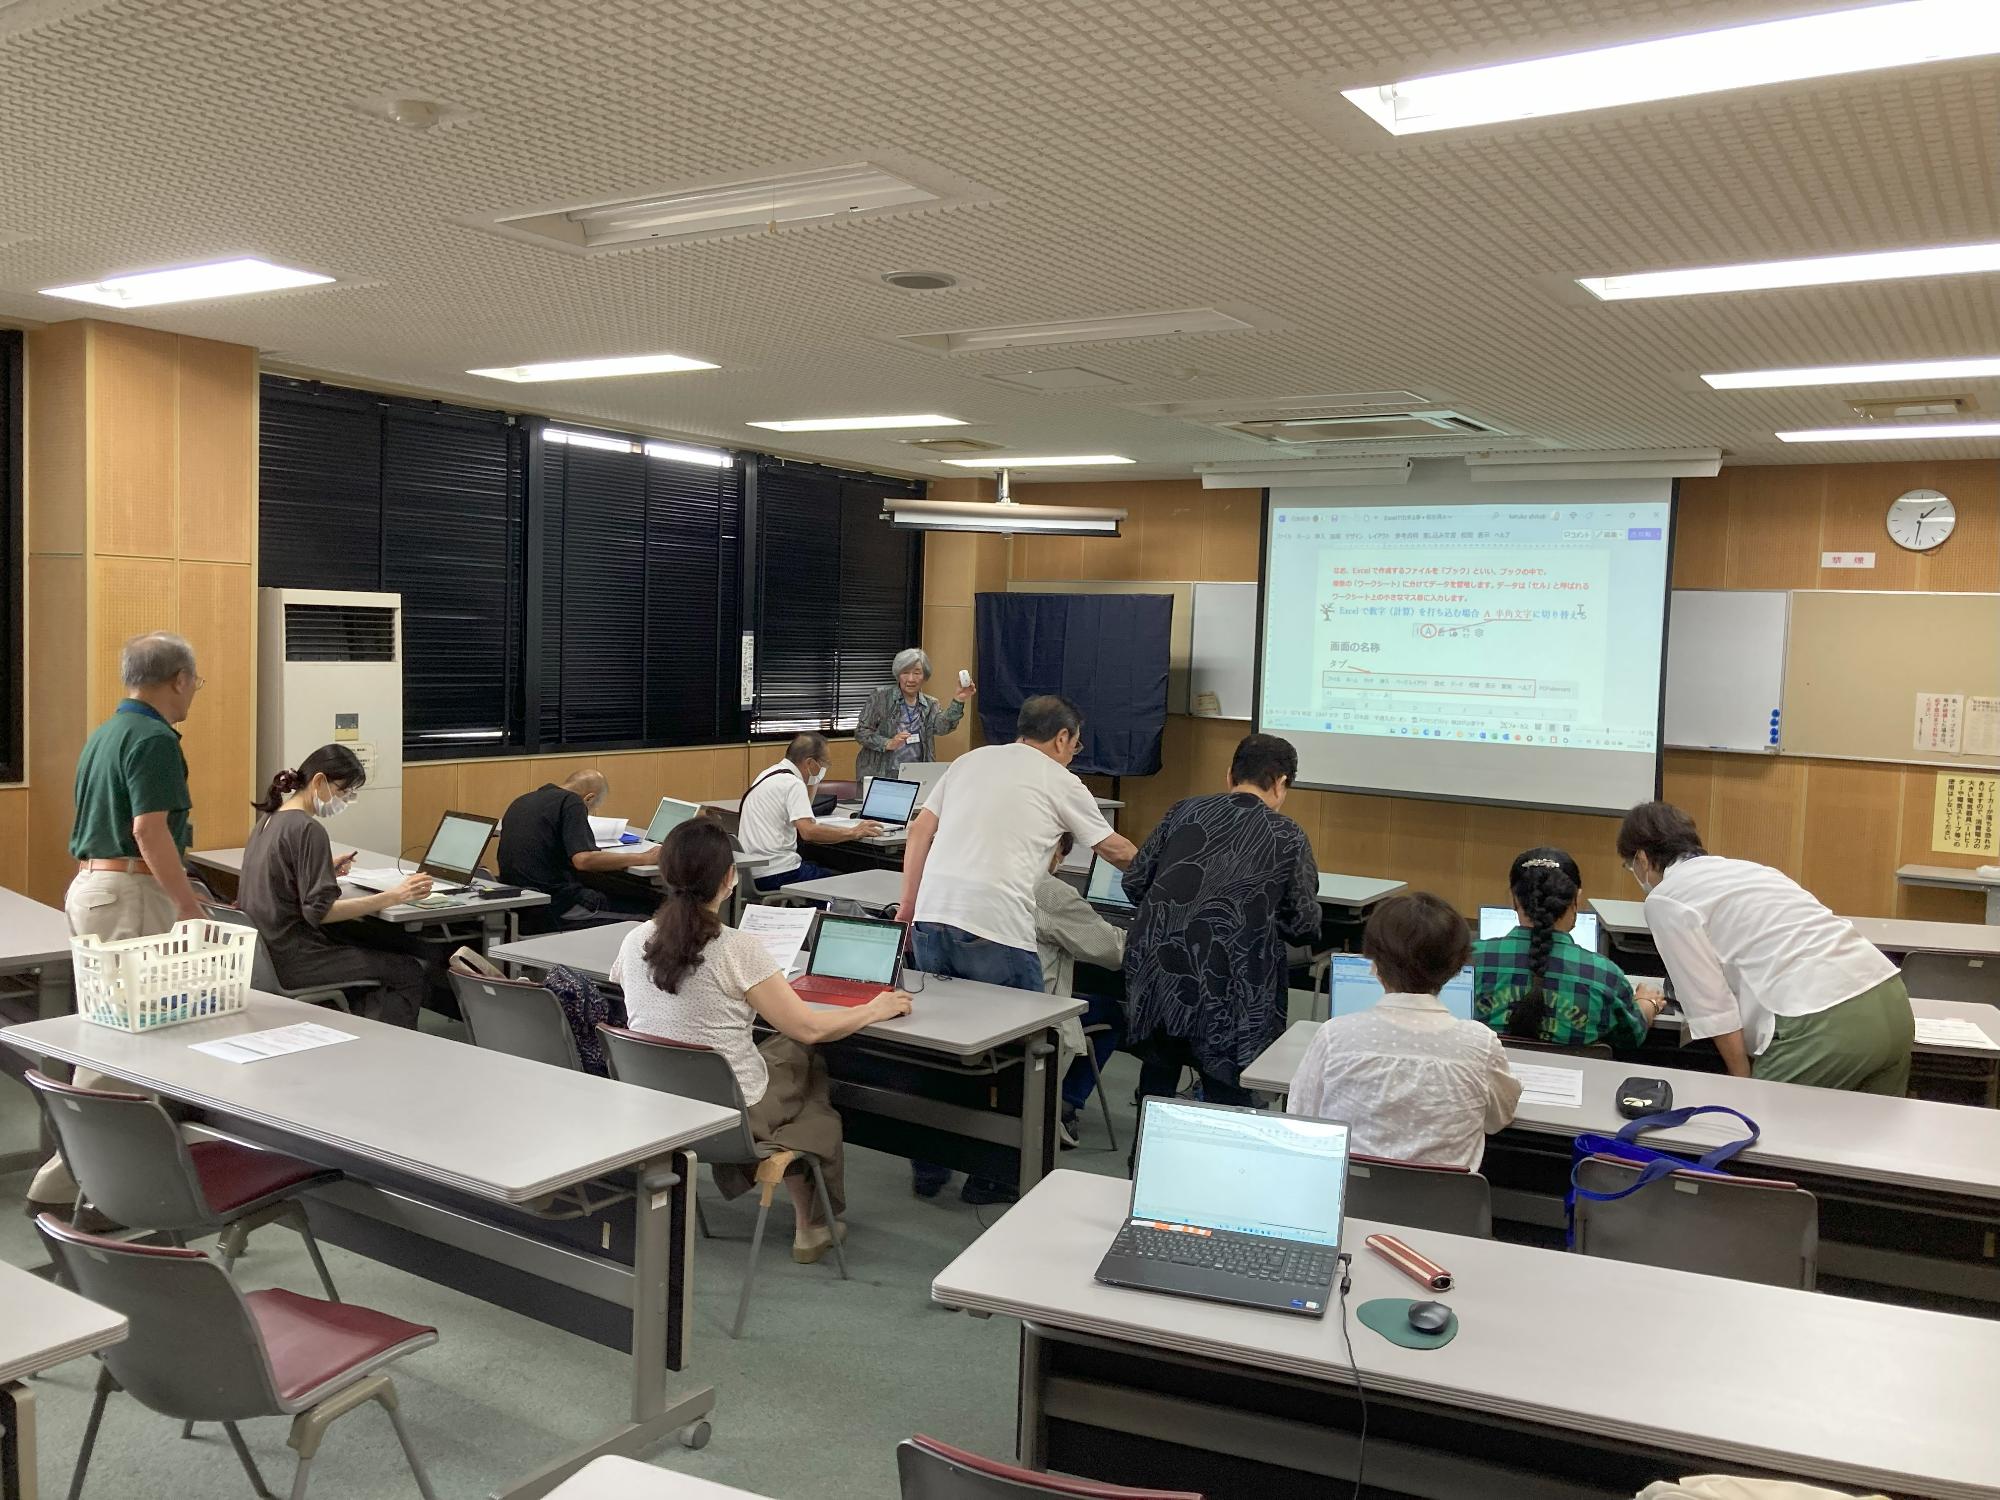 前方に先生とスクリーンがあり参加者が2人1組でパソコンを見て授業を受けている写真